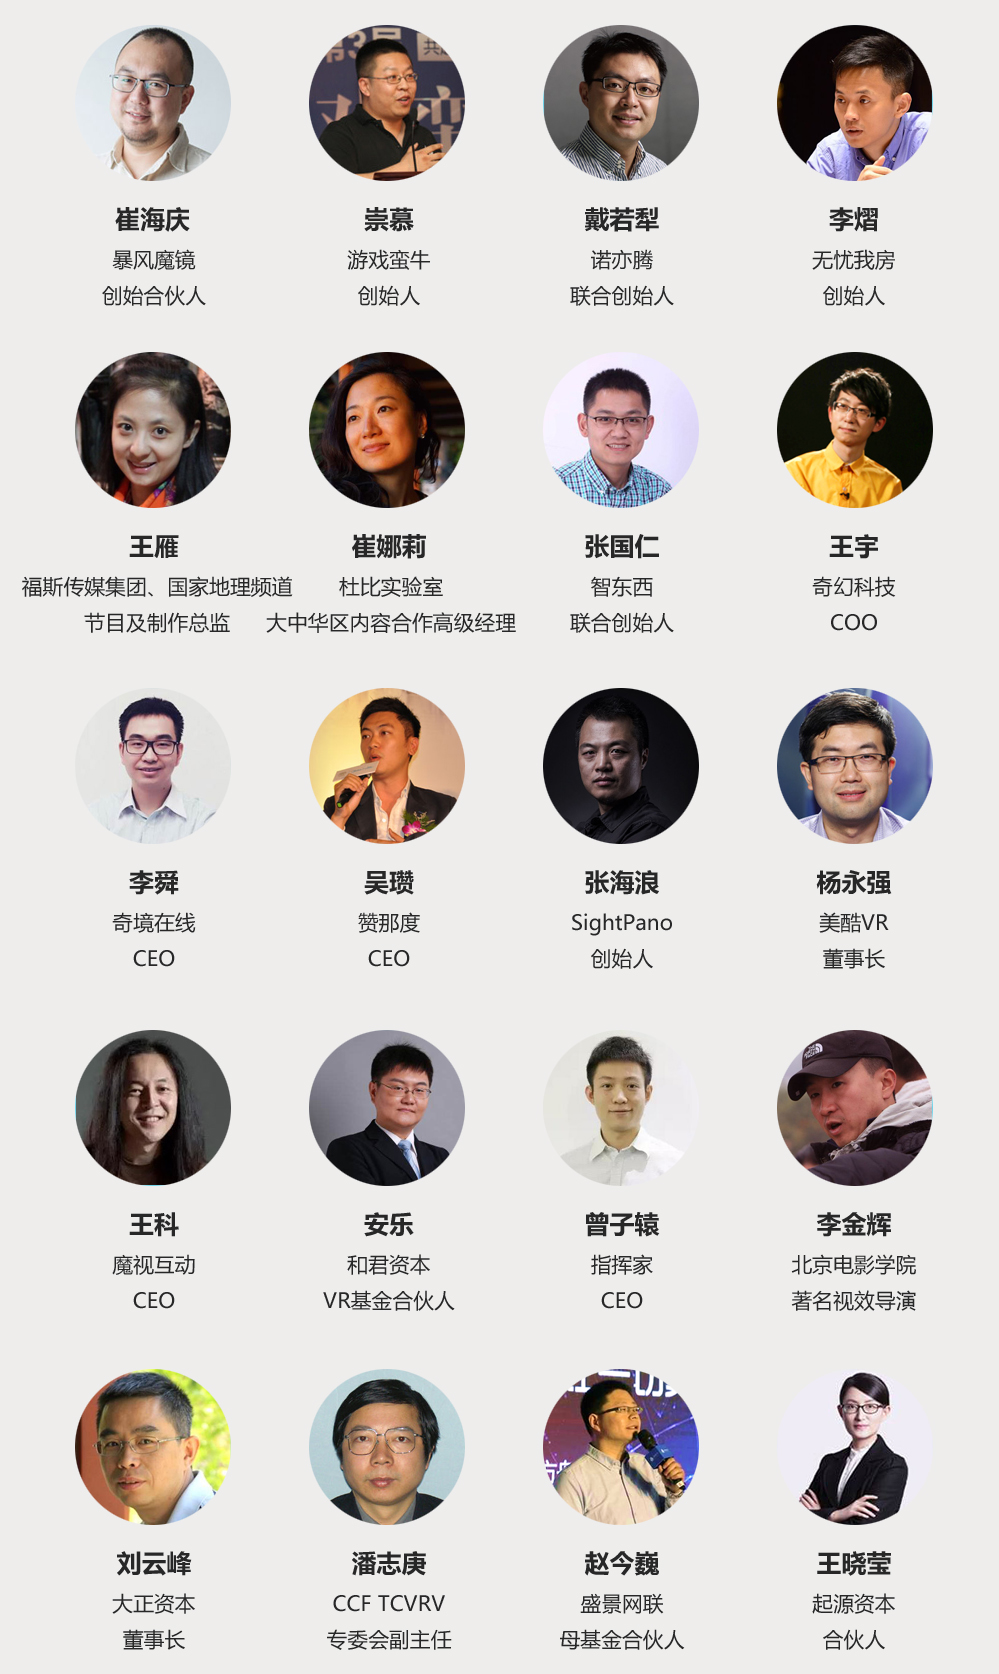 2016中国（北京）VR/AR应用与创新峰会